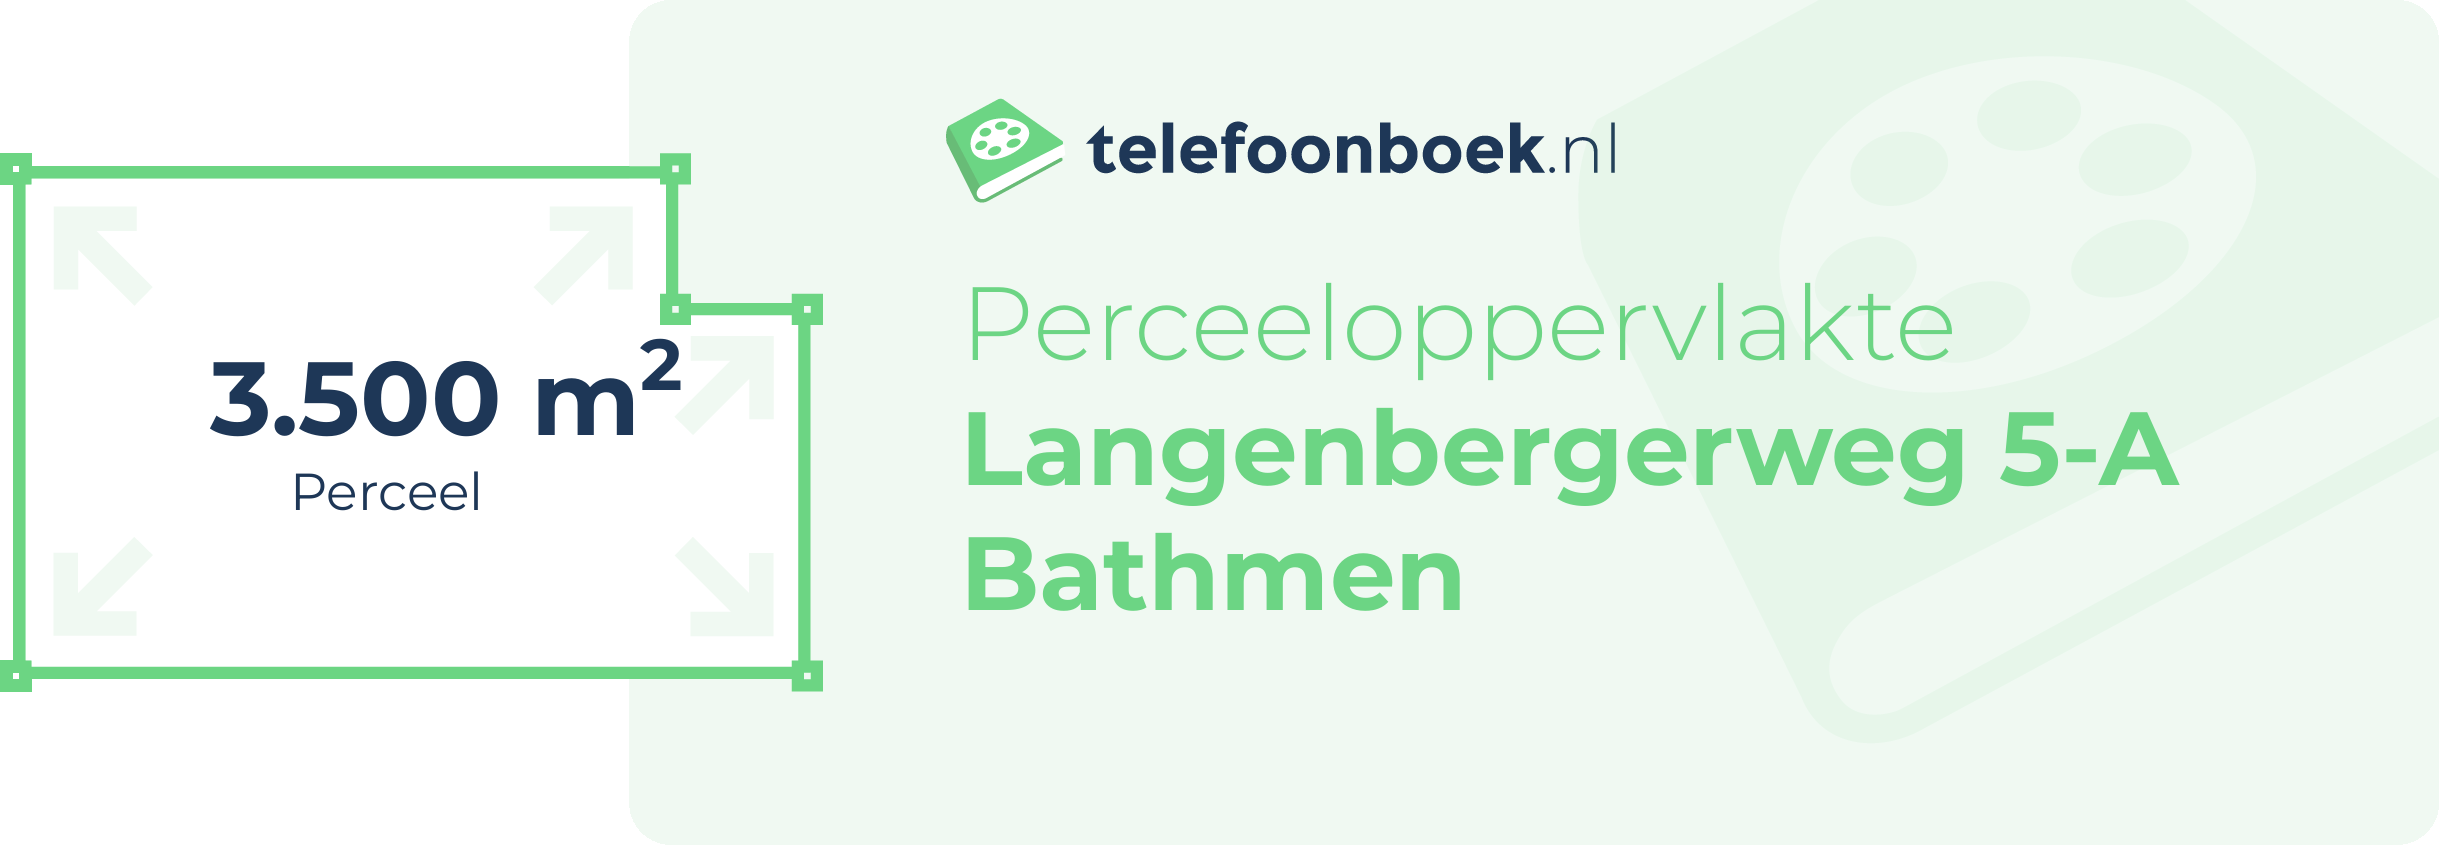 Perceeloppervlakte Langenbergerweg 5-A Bathmen